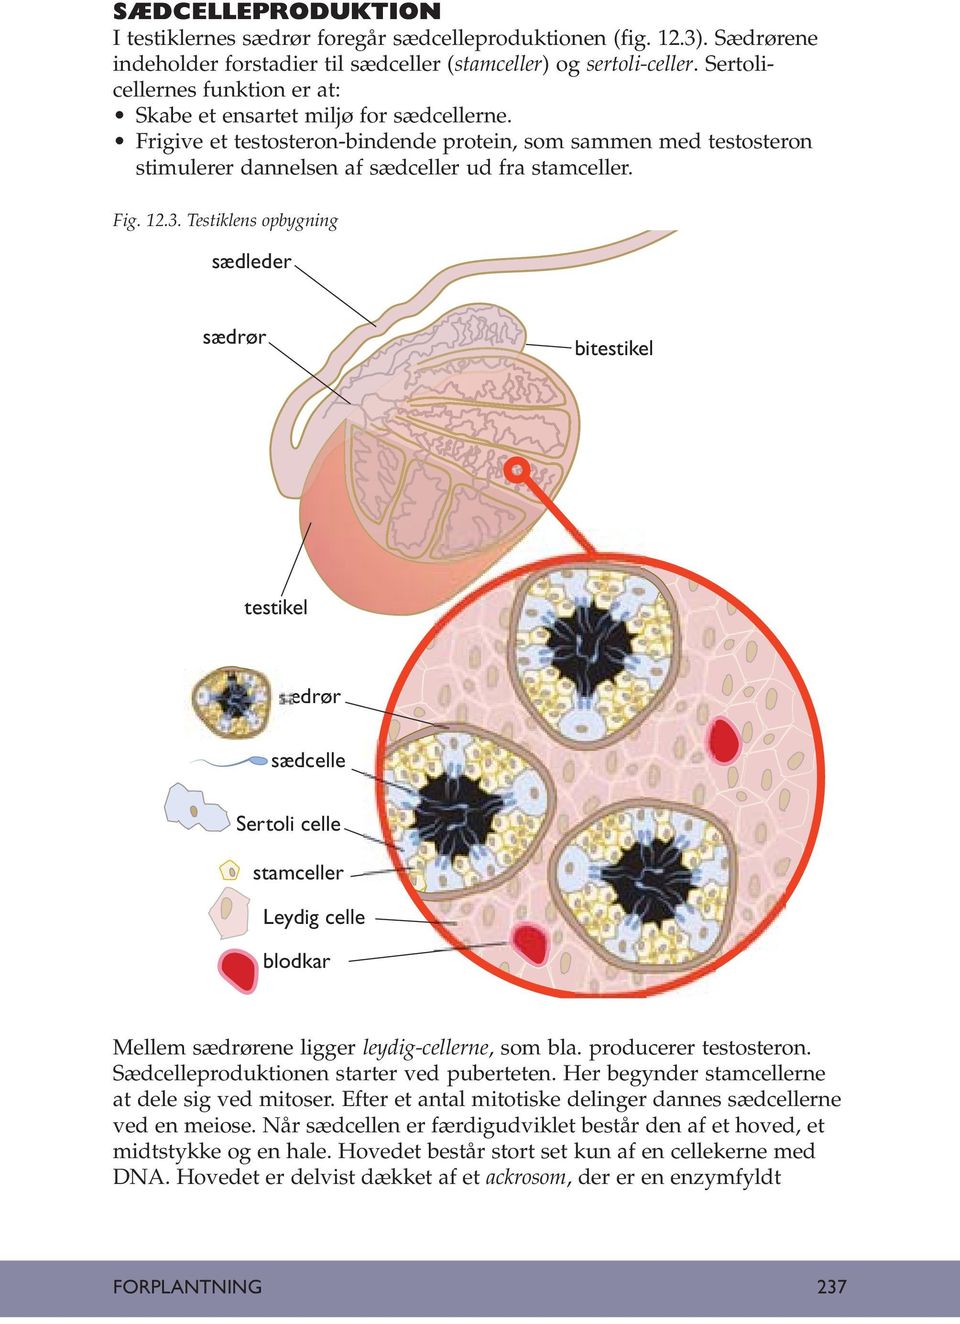 12.3. Testiklens opbygning sædleder sædrør bitestikel testikel ædrør sædcelle Sertoli celle stamceller Leydig celle blodkar Mellem sædrørene ligger leydig-cellerne, som bla. producerer testosteron.